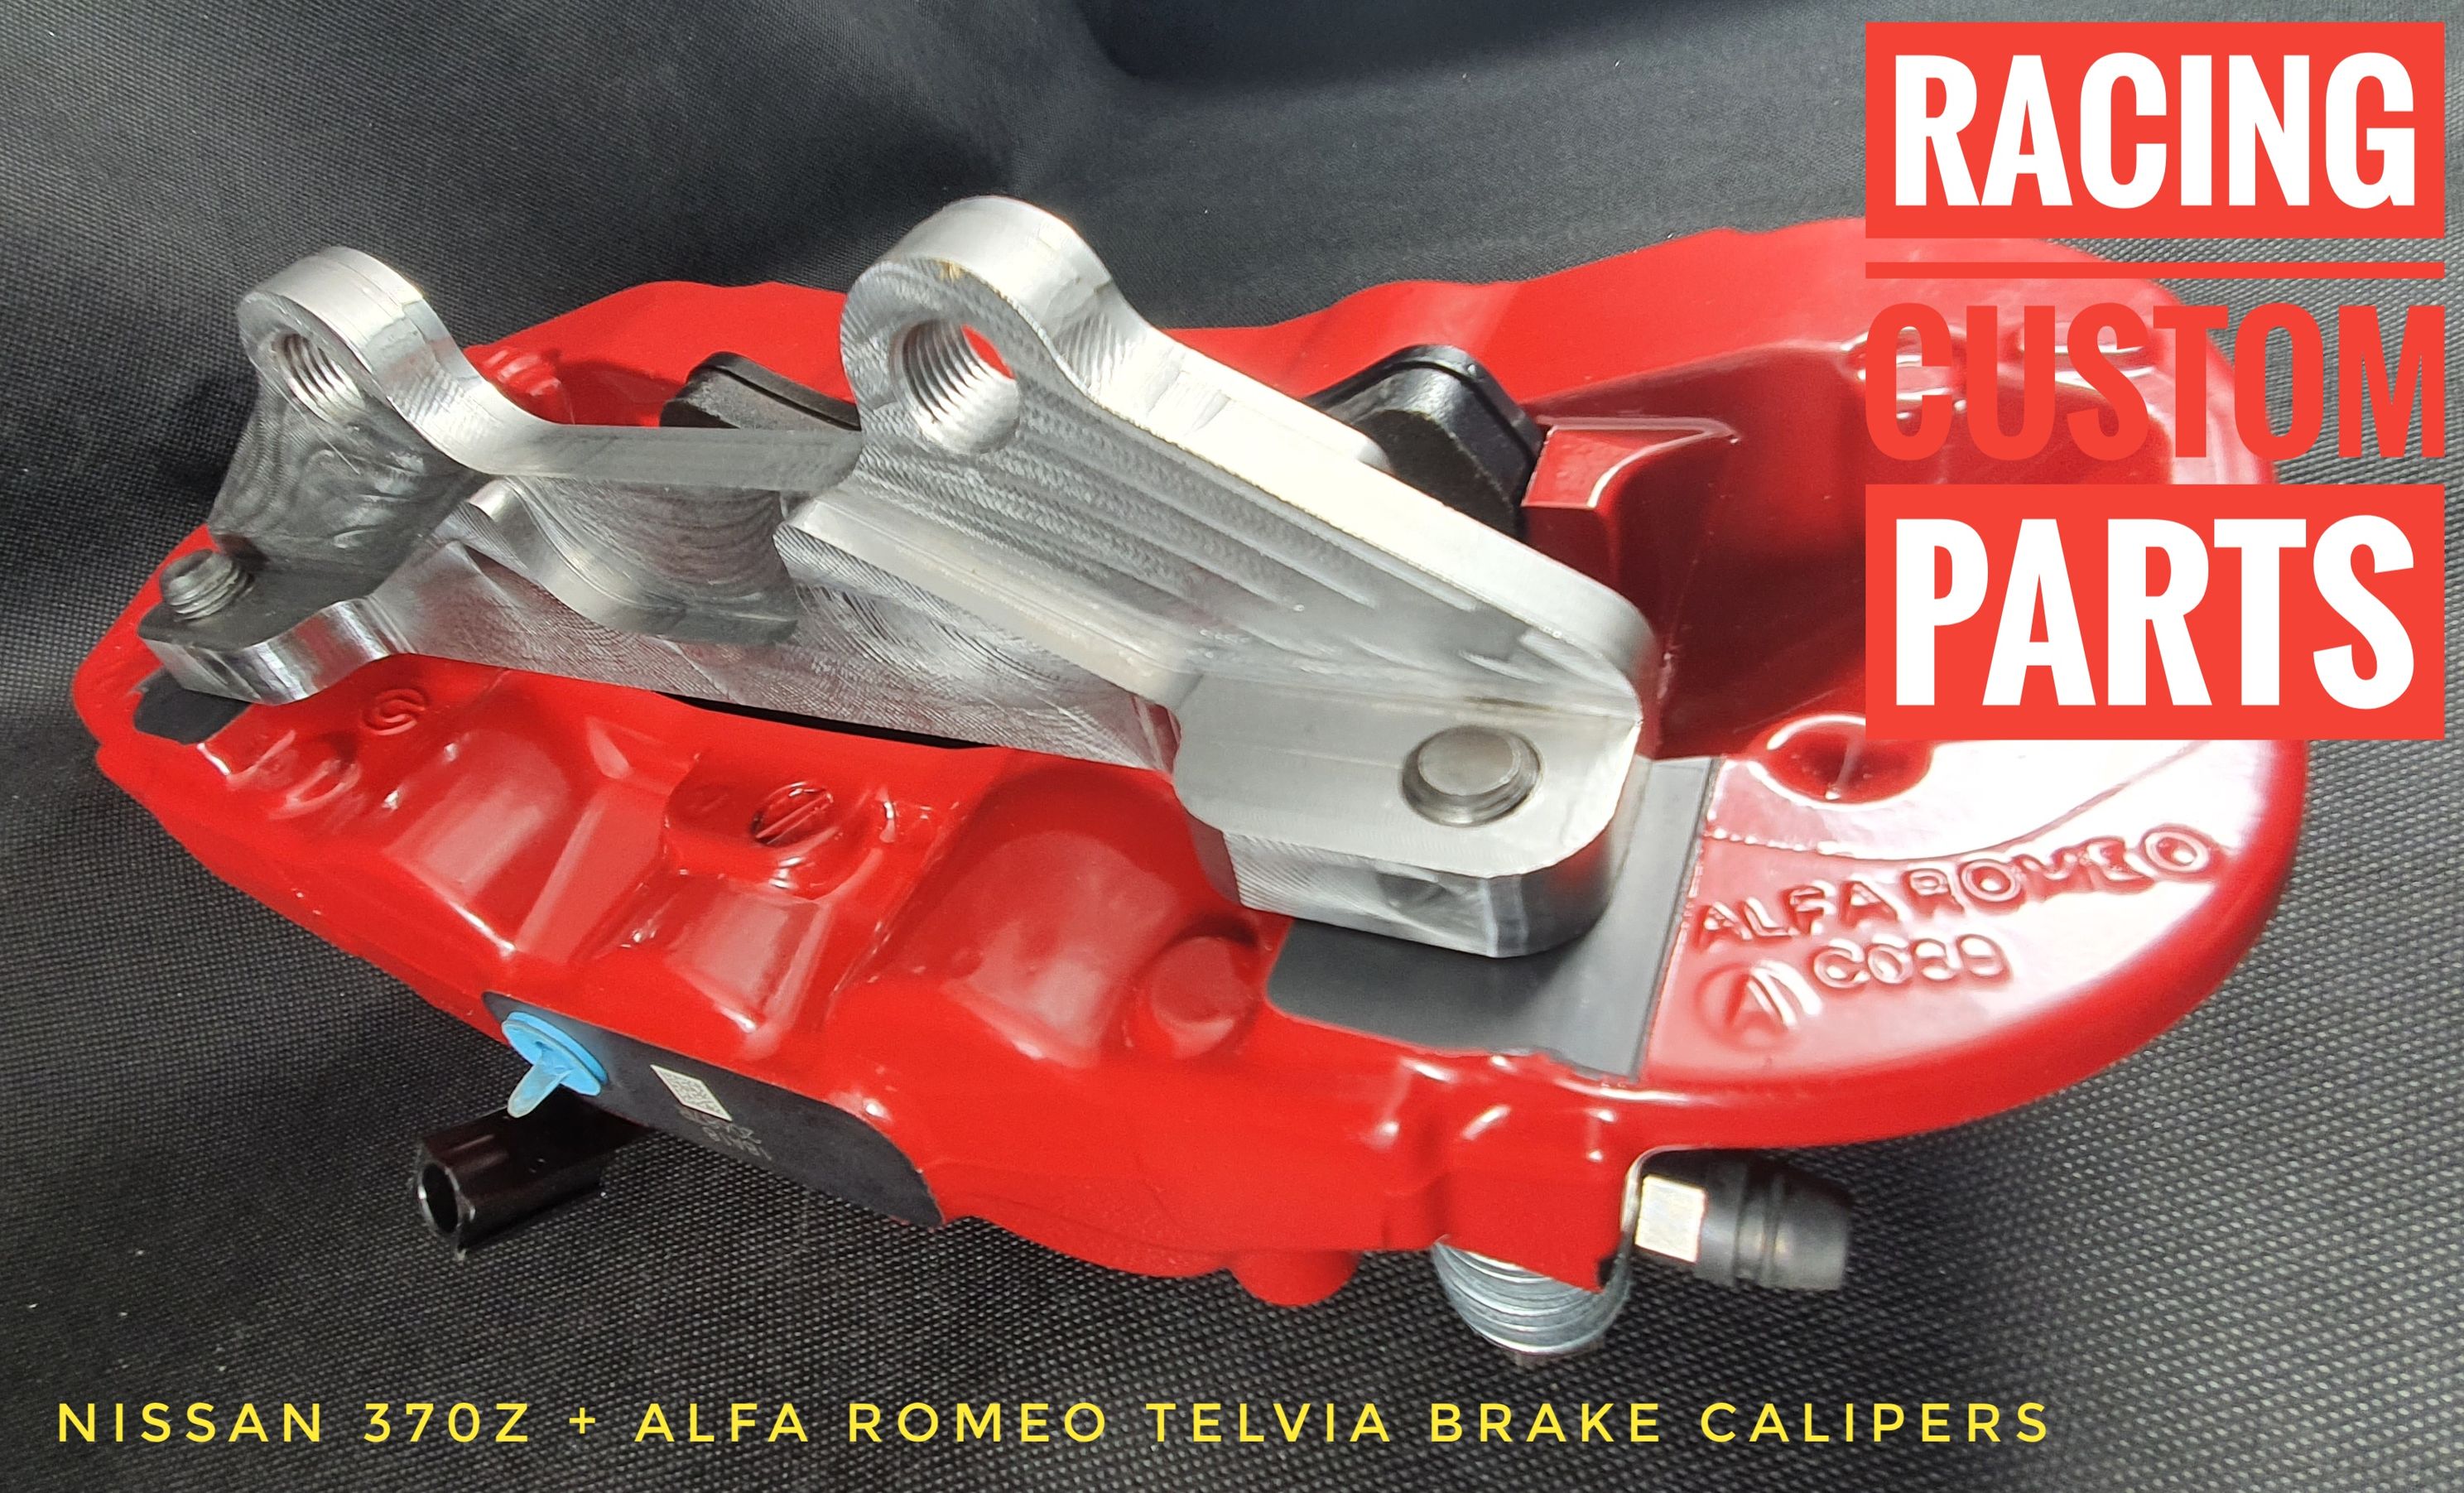 Nissan 370Z alfa romeo telvia brake calipers adapters billet cnc racing custom parts big brake kit